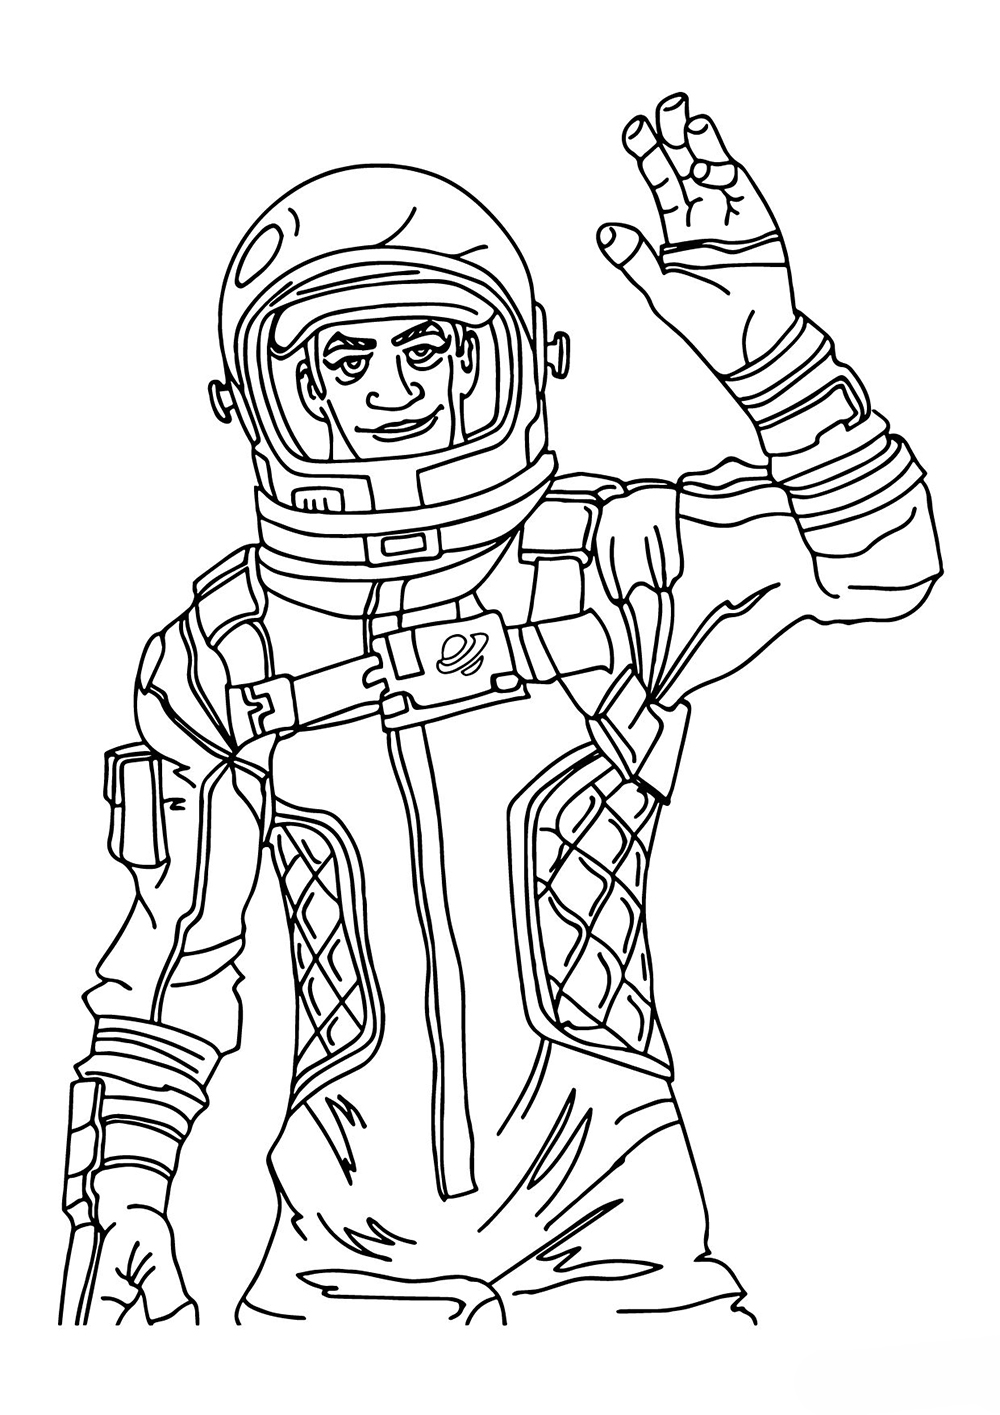 Фортнайт космонавт с поднятой рукой